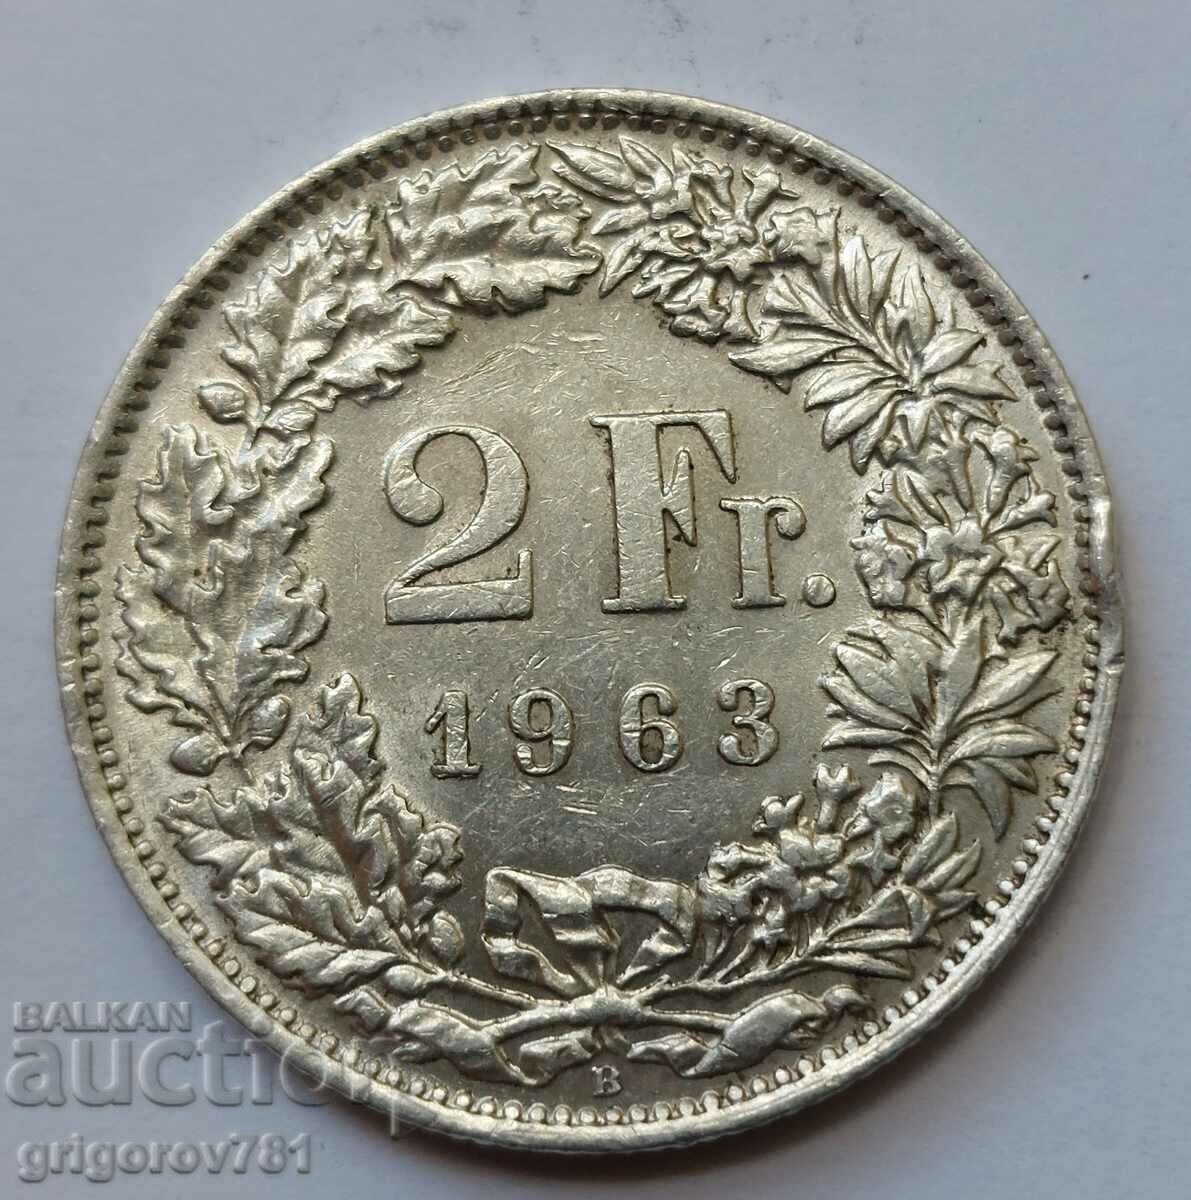 2 Φράγκα Ασημένιο Ελβετία 1963 Β - Ασημένιο νόμισμα #13